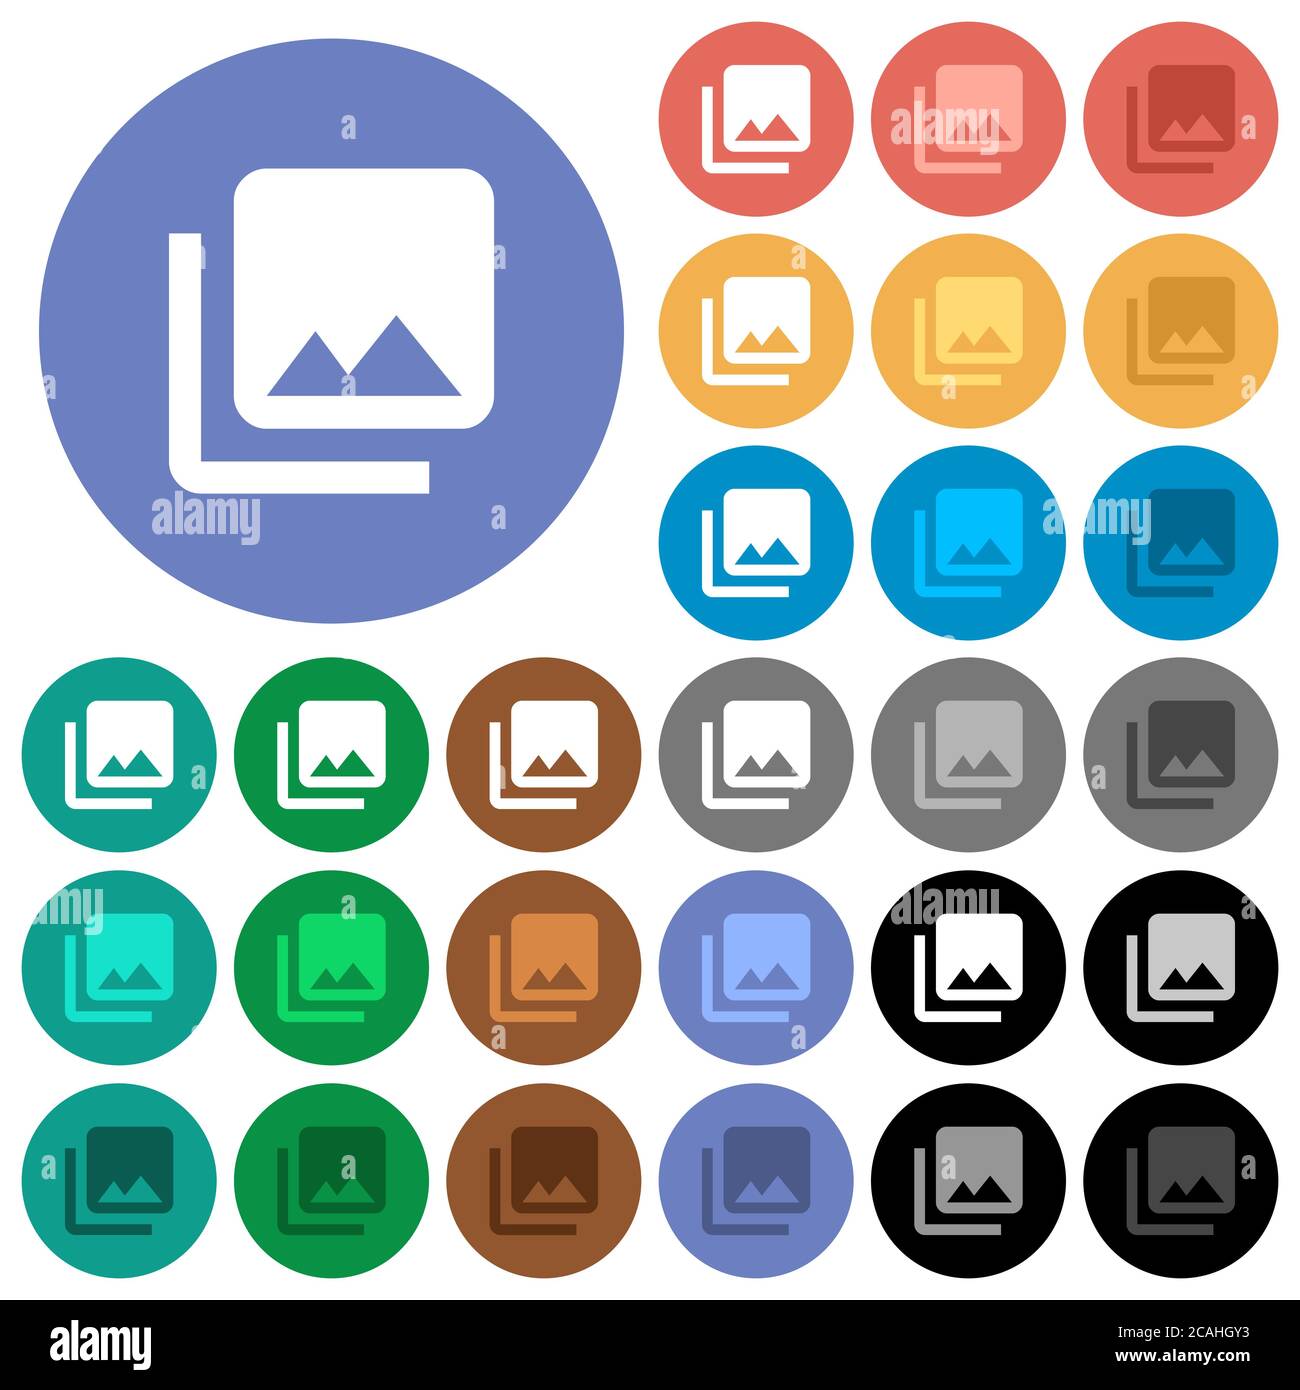 Libreria fotografica icone piatte multicolore su sfondi rotondi. Incluse variazioni delle icone bianche, chiare e scure per il passaggio del mouse e gli effetti di stato attivo e b Illustrazione Vettoriale